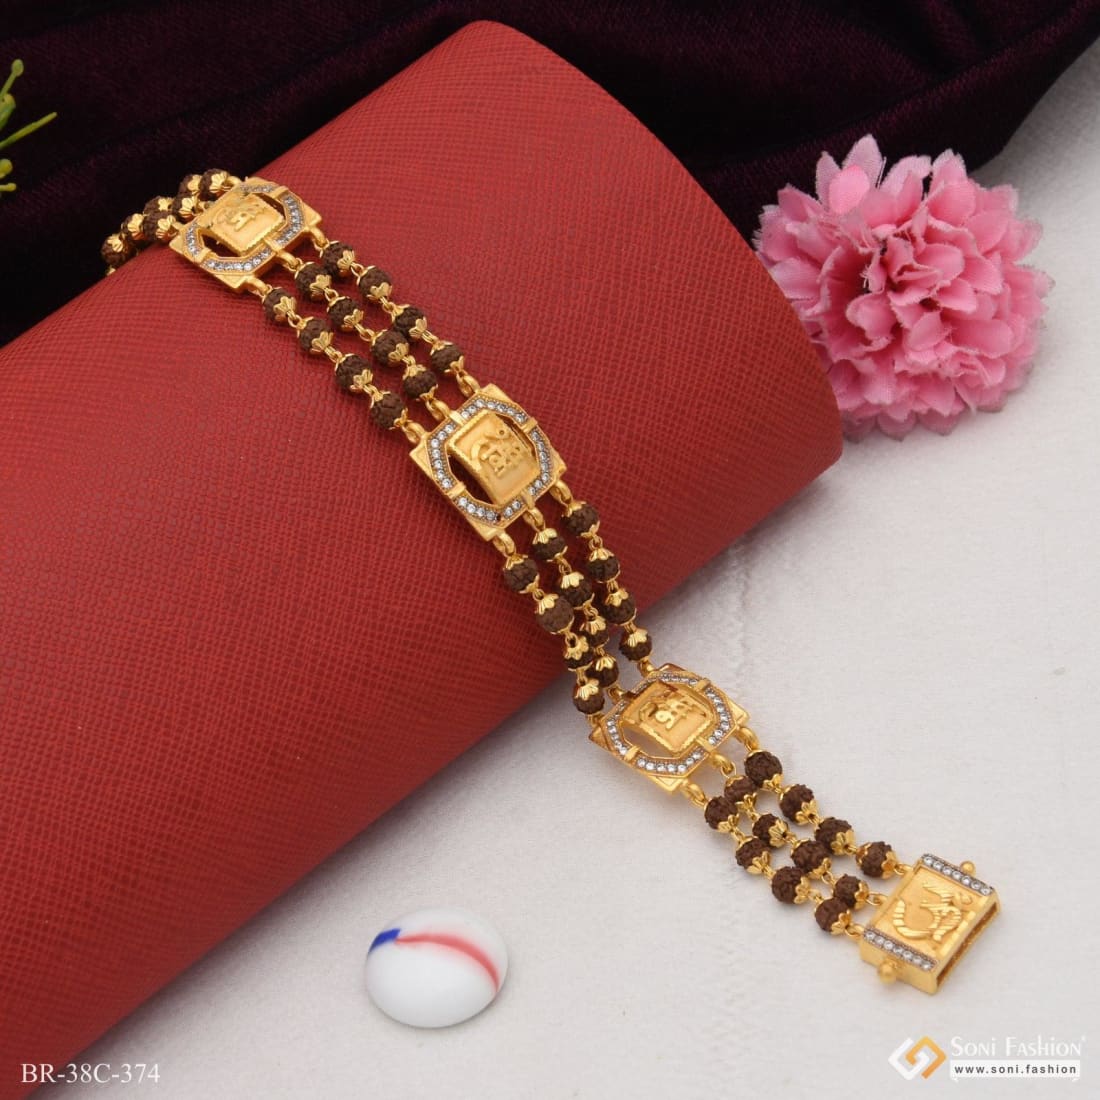 1 Gram Gold Forming Rudraksh Bracelet - Men's Style B984 at Rs 2280.00 |  Rudraksha Bracelet | ID: 26629676788